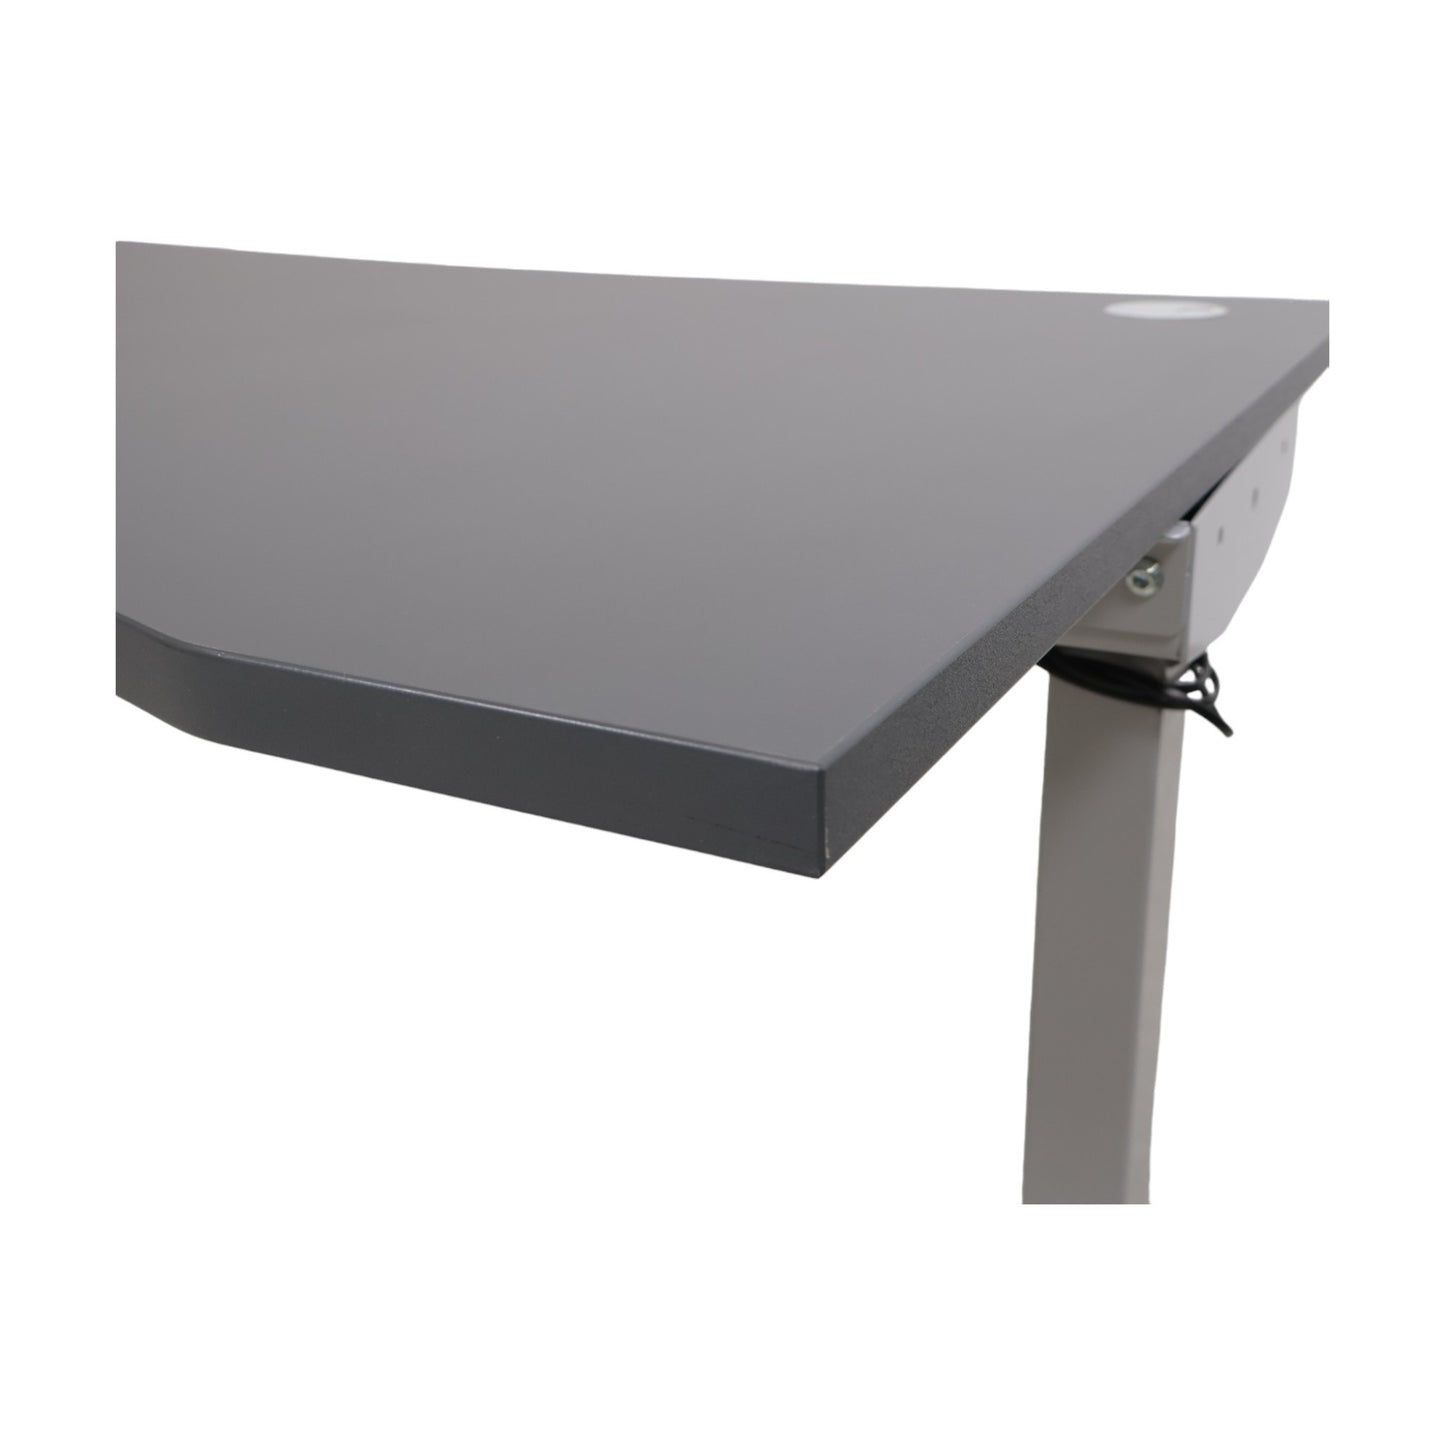 Kvalitetssikret | Flexus elektrisk hev/senk skrivebord fra AJ Produkter